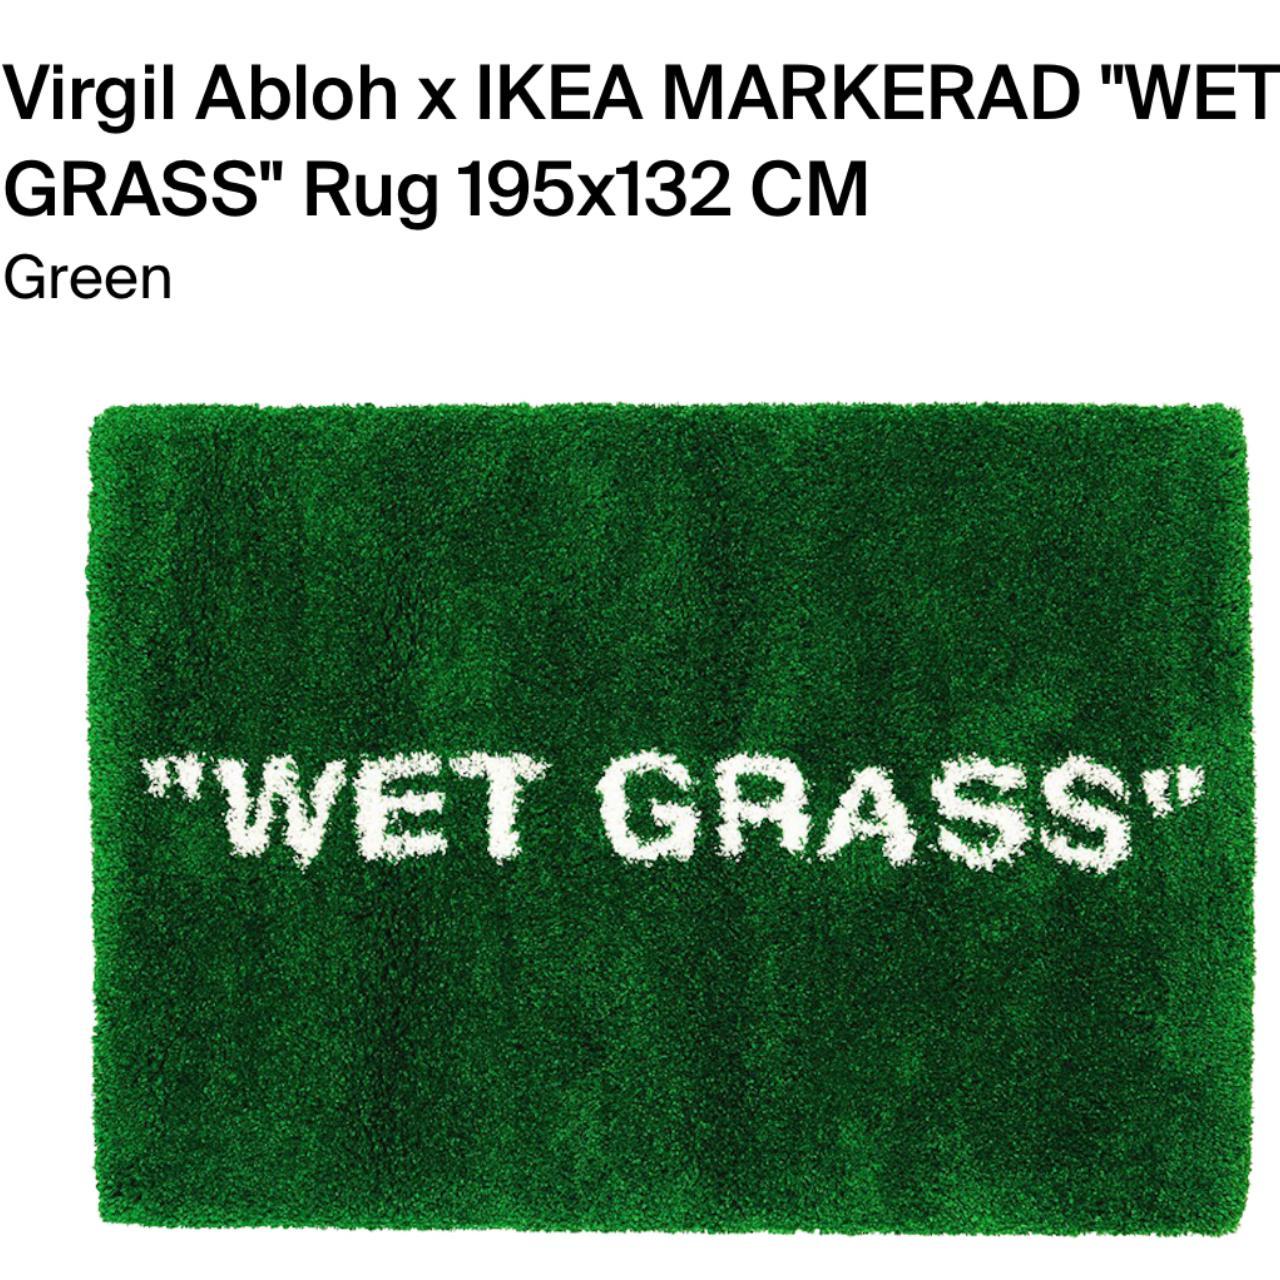 Wet Grass' Virgil Abloh x Ikea Rug